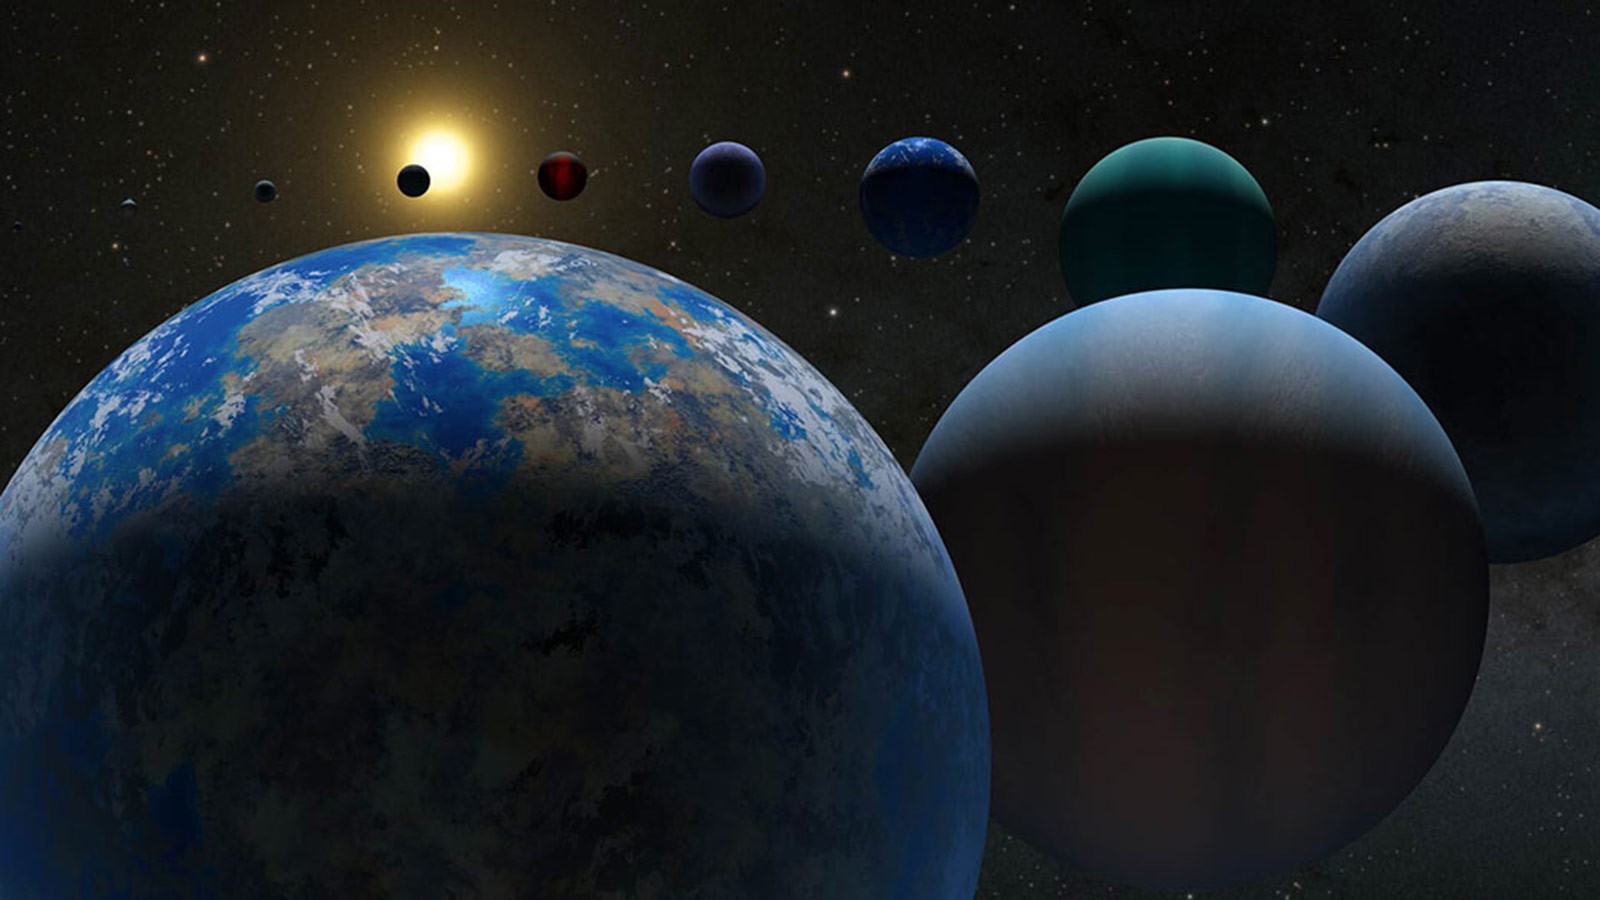 A to odkrycie! Naukowcy odkryli fascynujący układ planetarny z sześciu planet poruszających się w całkowitej harmonii